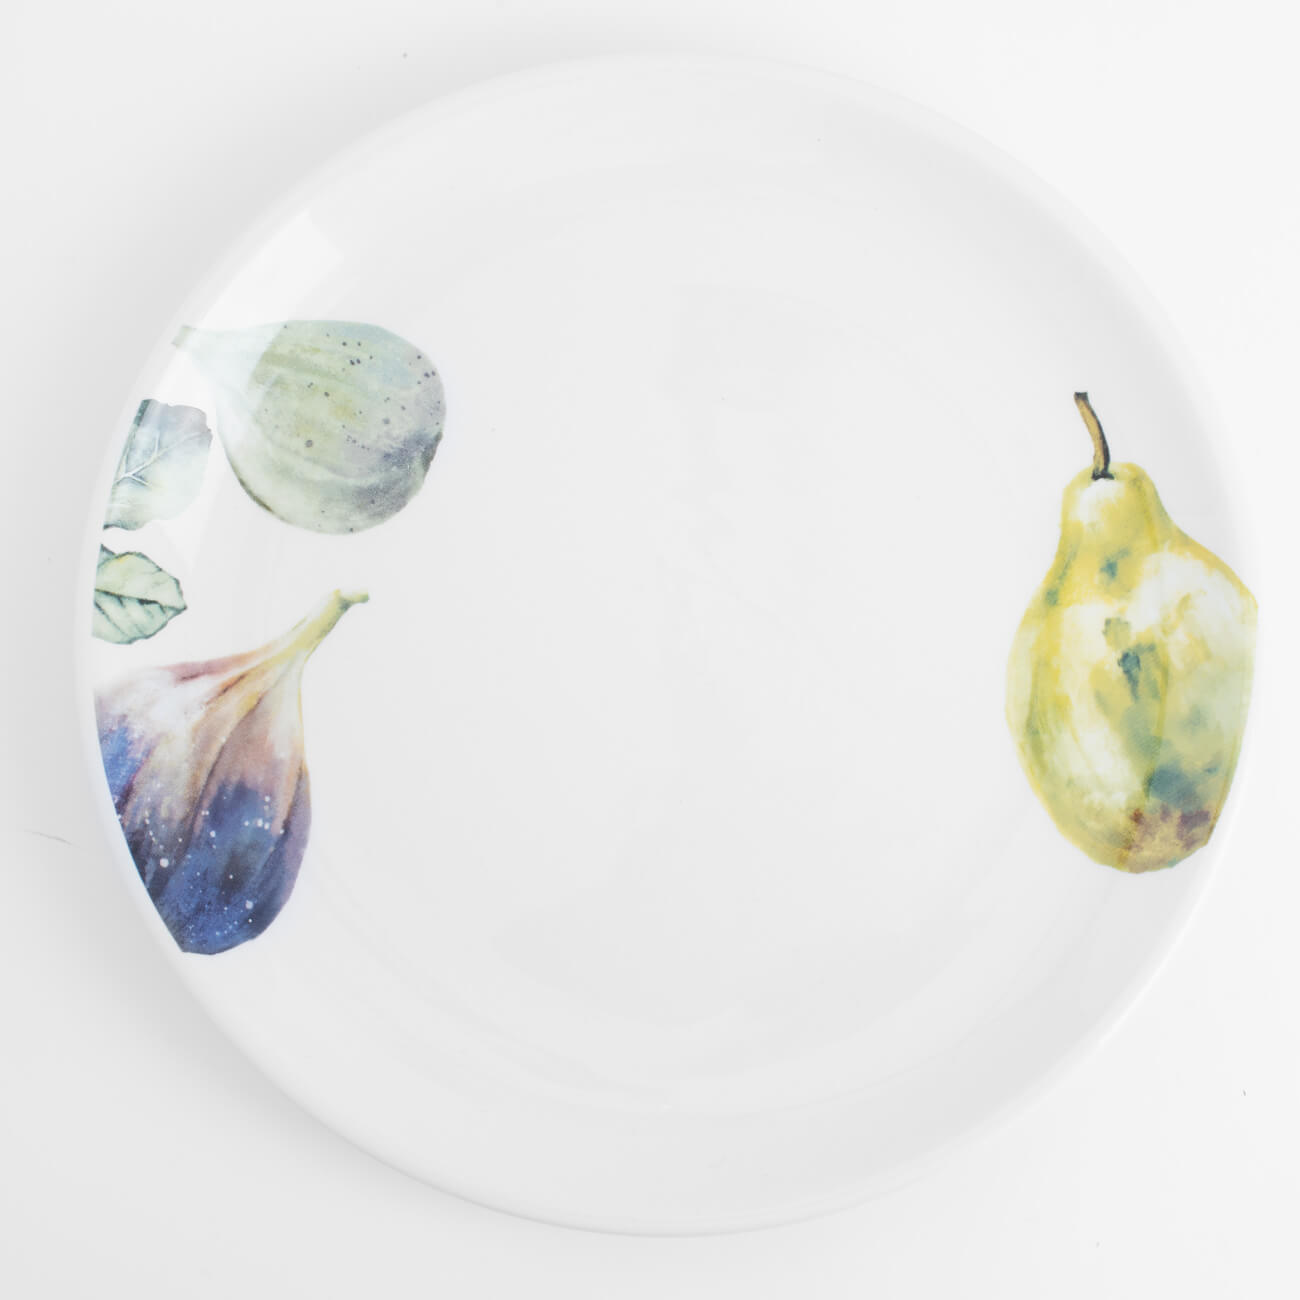 Тарелка закусочная, 21 см, керамика, белая, Инжир и груша, Fruit garden блюдо 19 см керамика зеленое шишки на листе fir cone